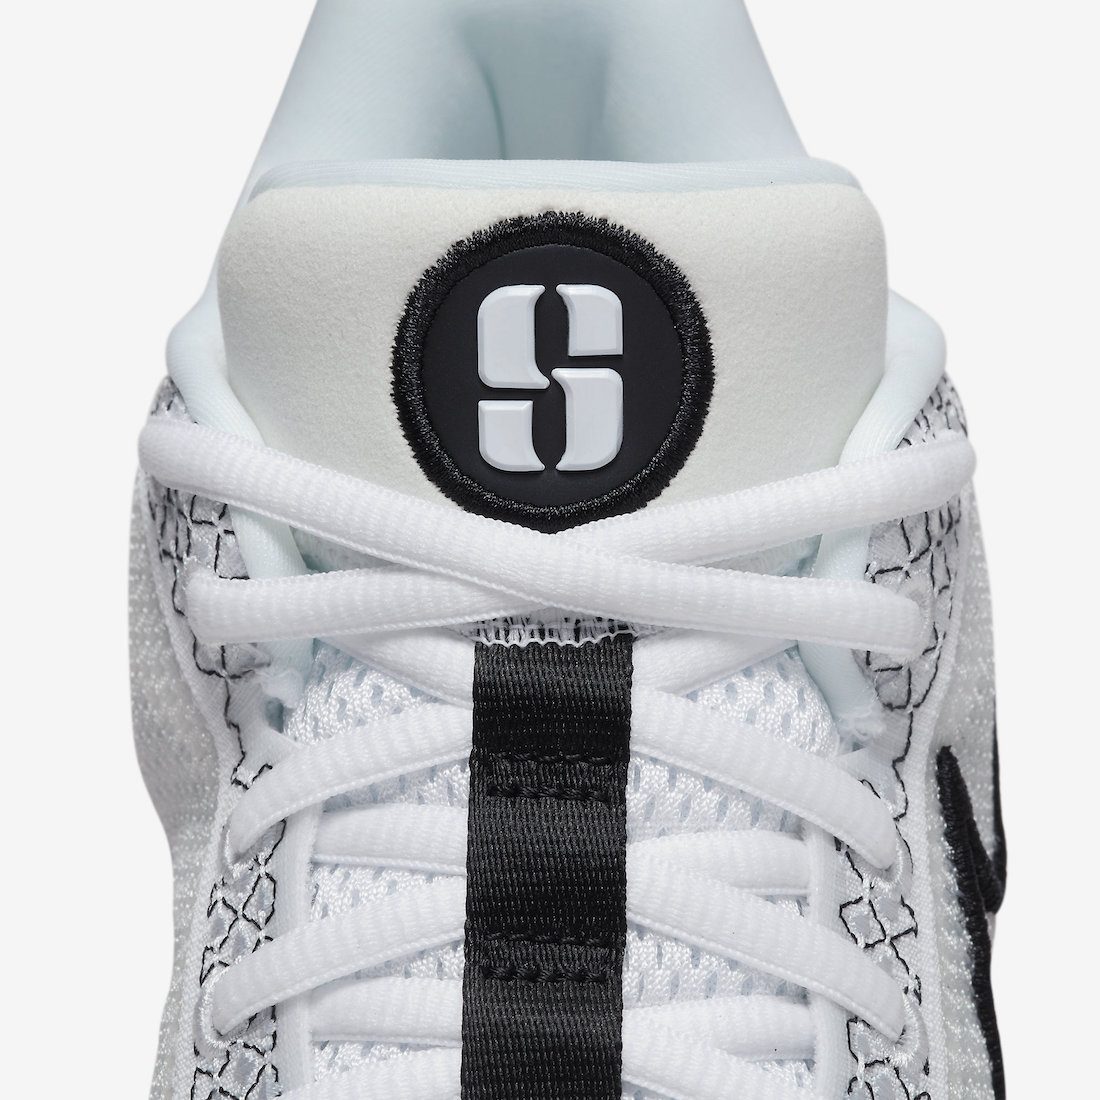 Nike Sabrina 1 Magnetic White Back FQ3381 103 8